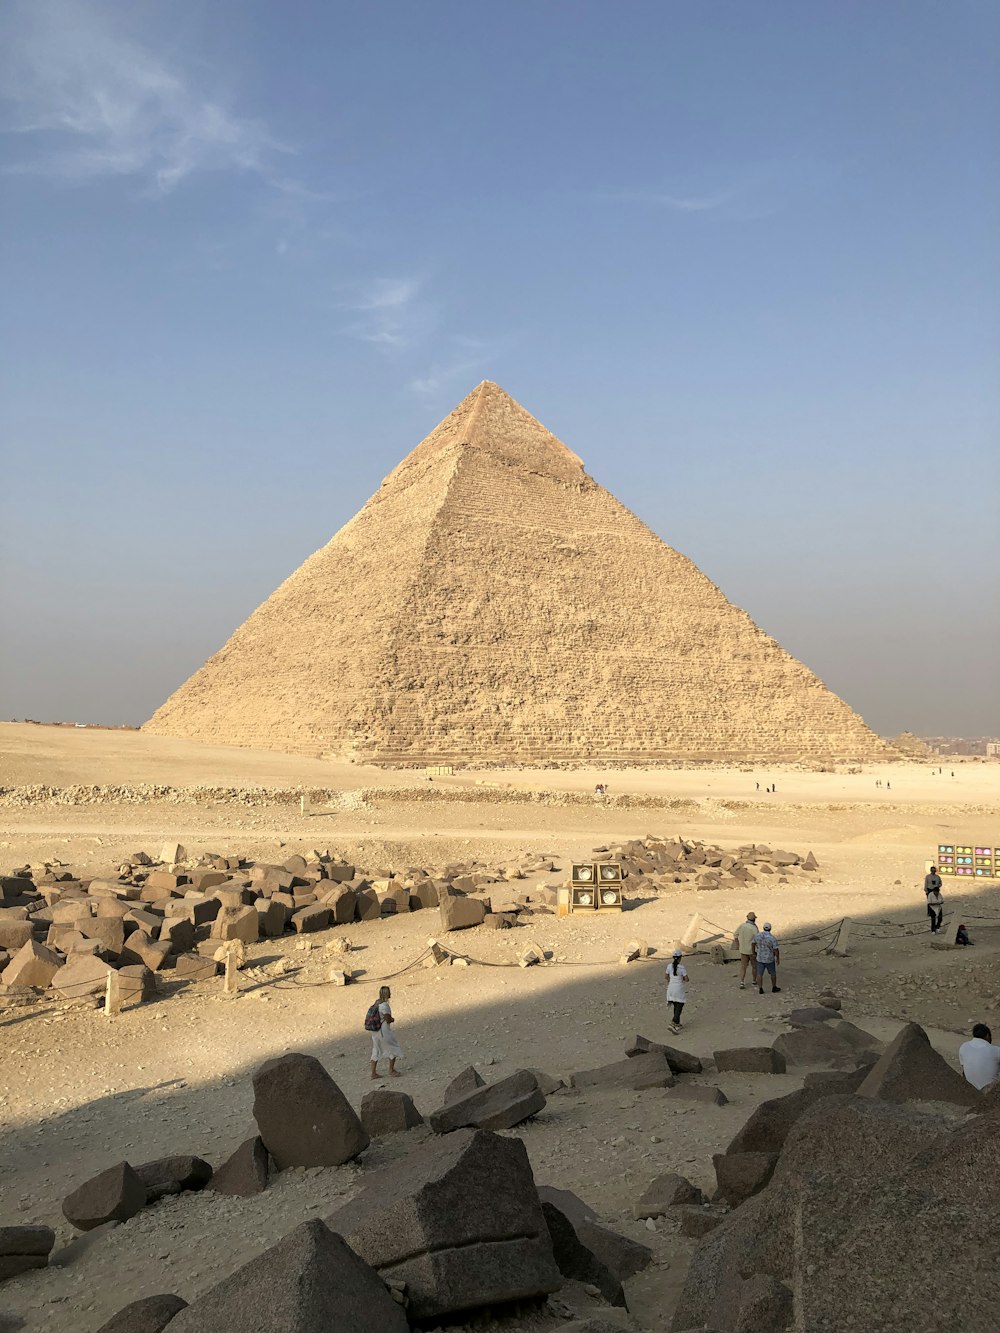 Personas en la arena marrón cerca de la pirámide durante el día